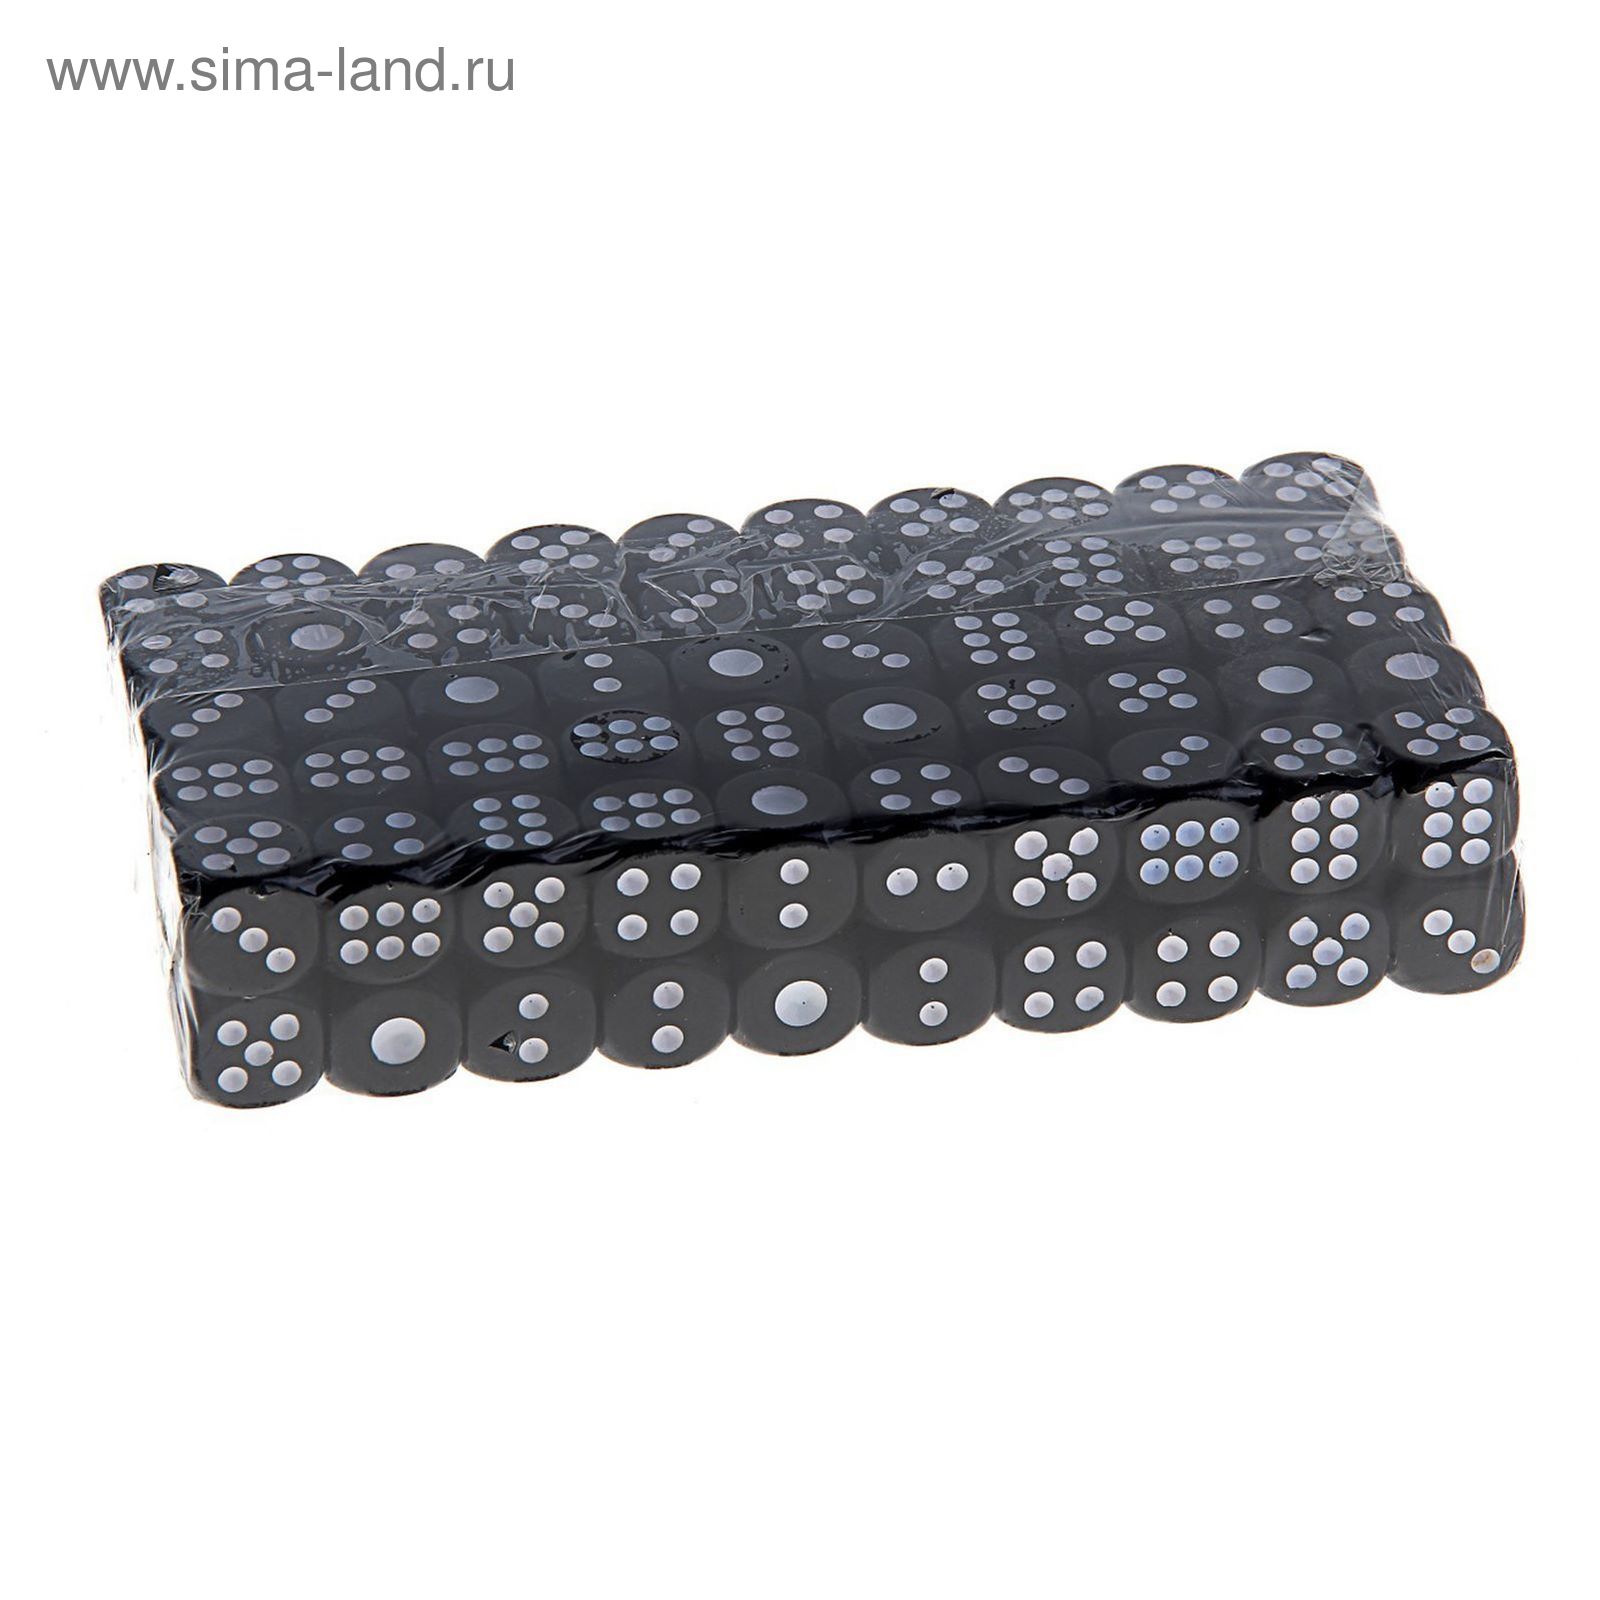 Кубики игральные 1,4 × 1,4 см, чёрные с белыми точками, фасовка 100 шт.